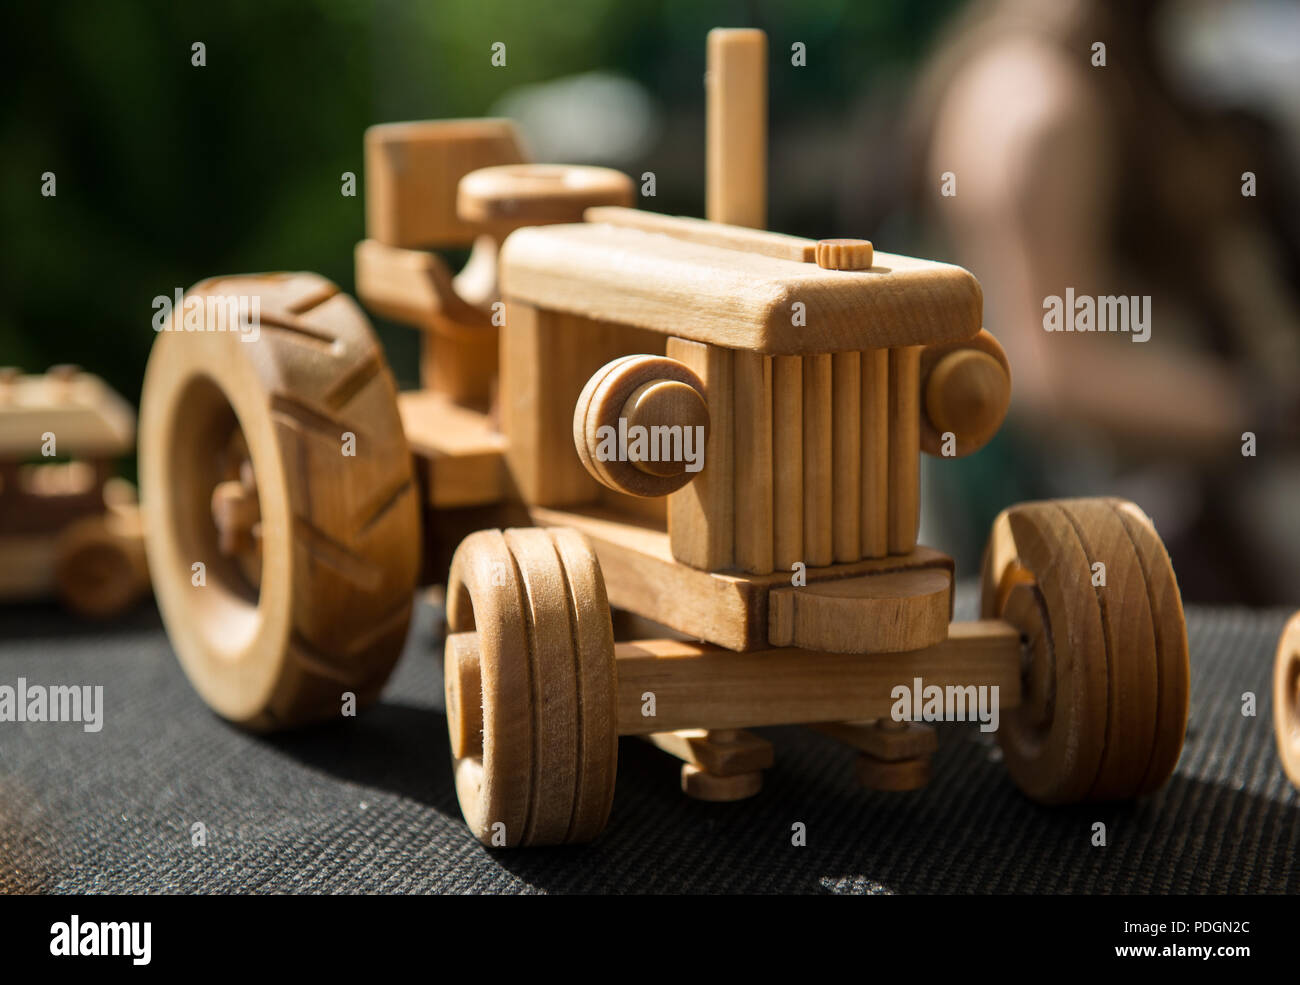 Kleine Holzspielzeug Auto Stockfotografie - Alamy